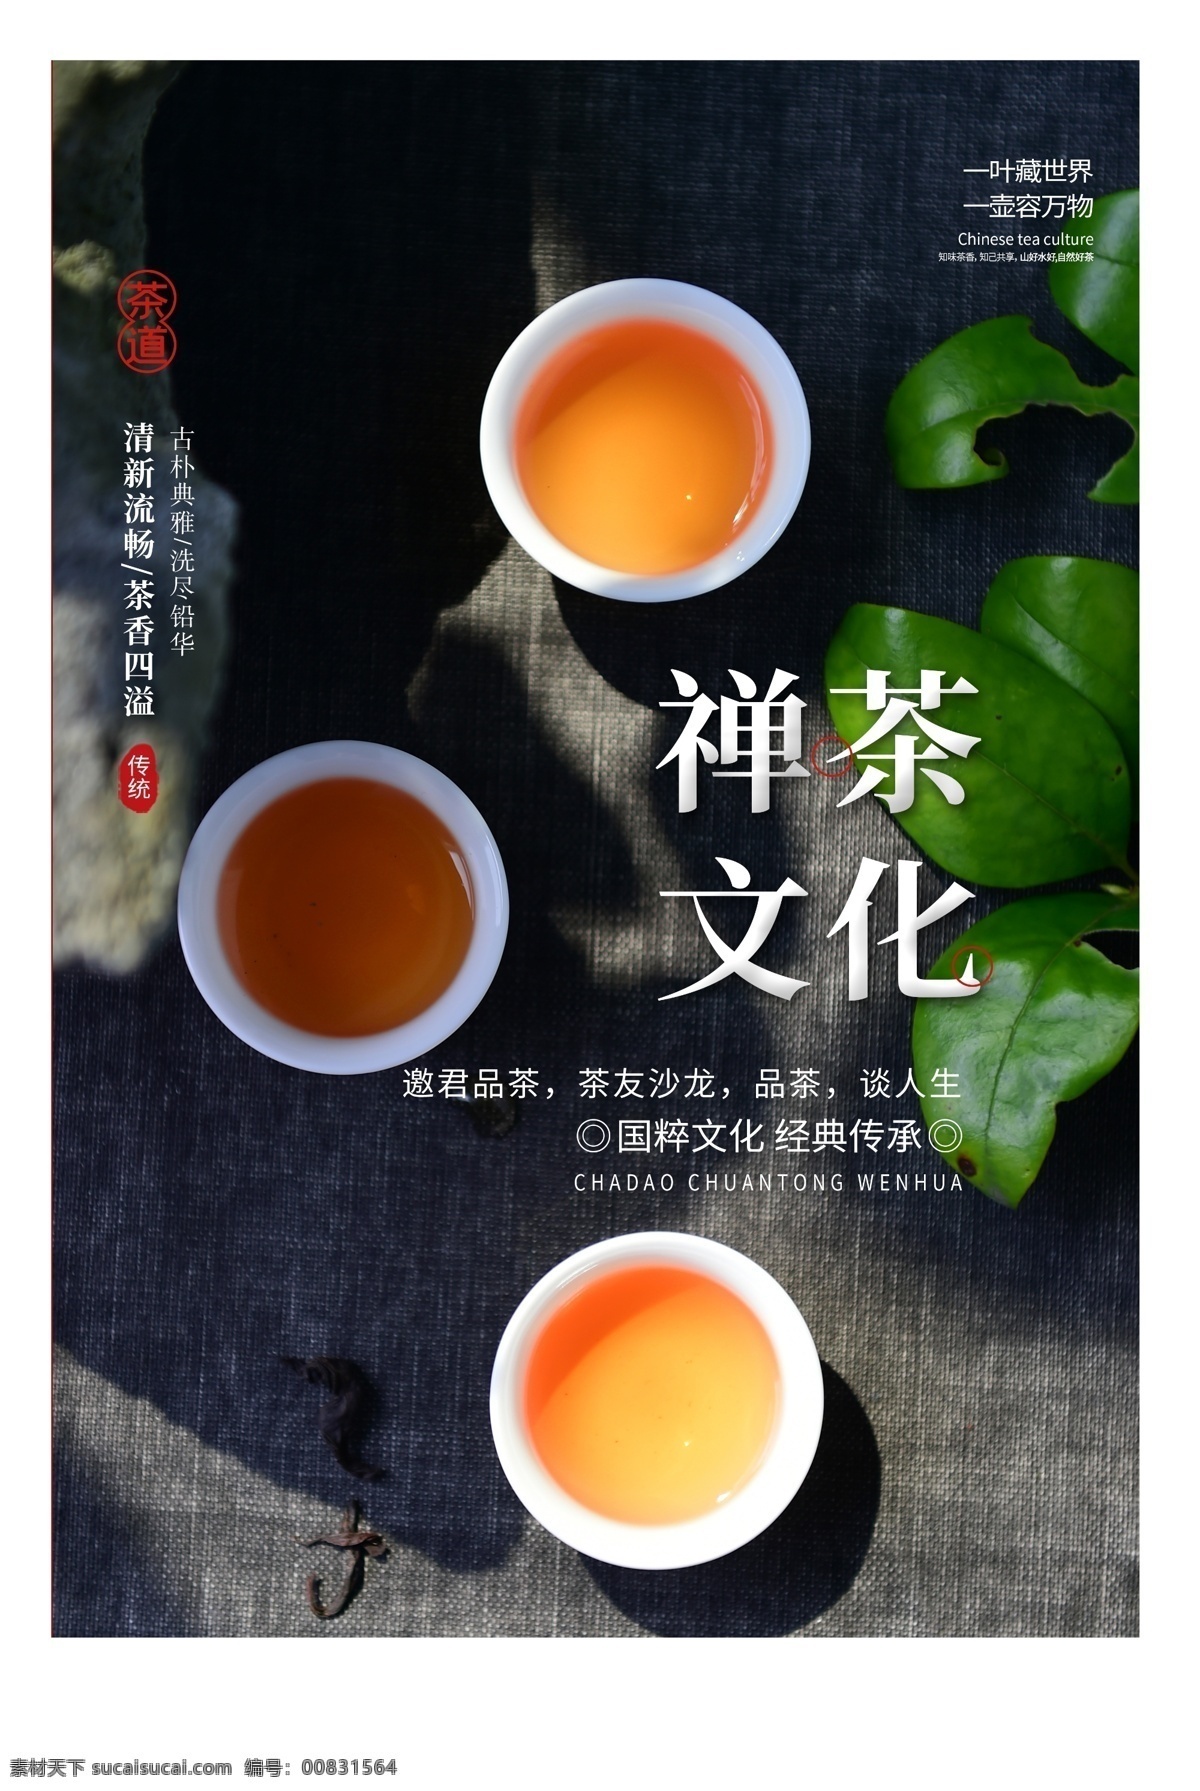 禅 茶文化 活动 宣传海报 禅茶 文化 宣传 海报